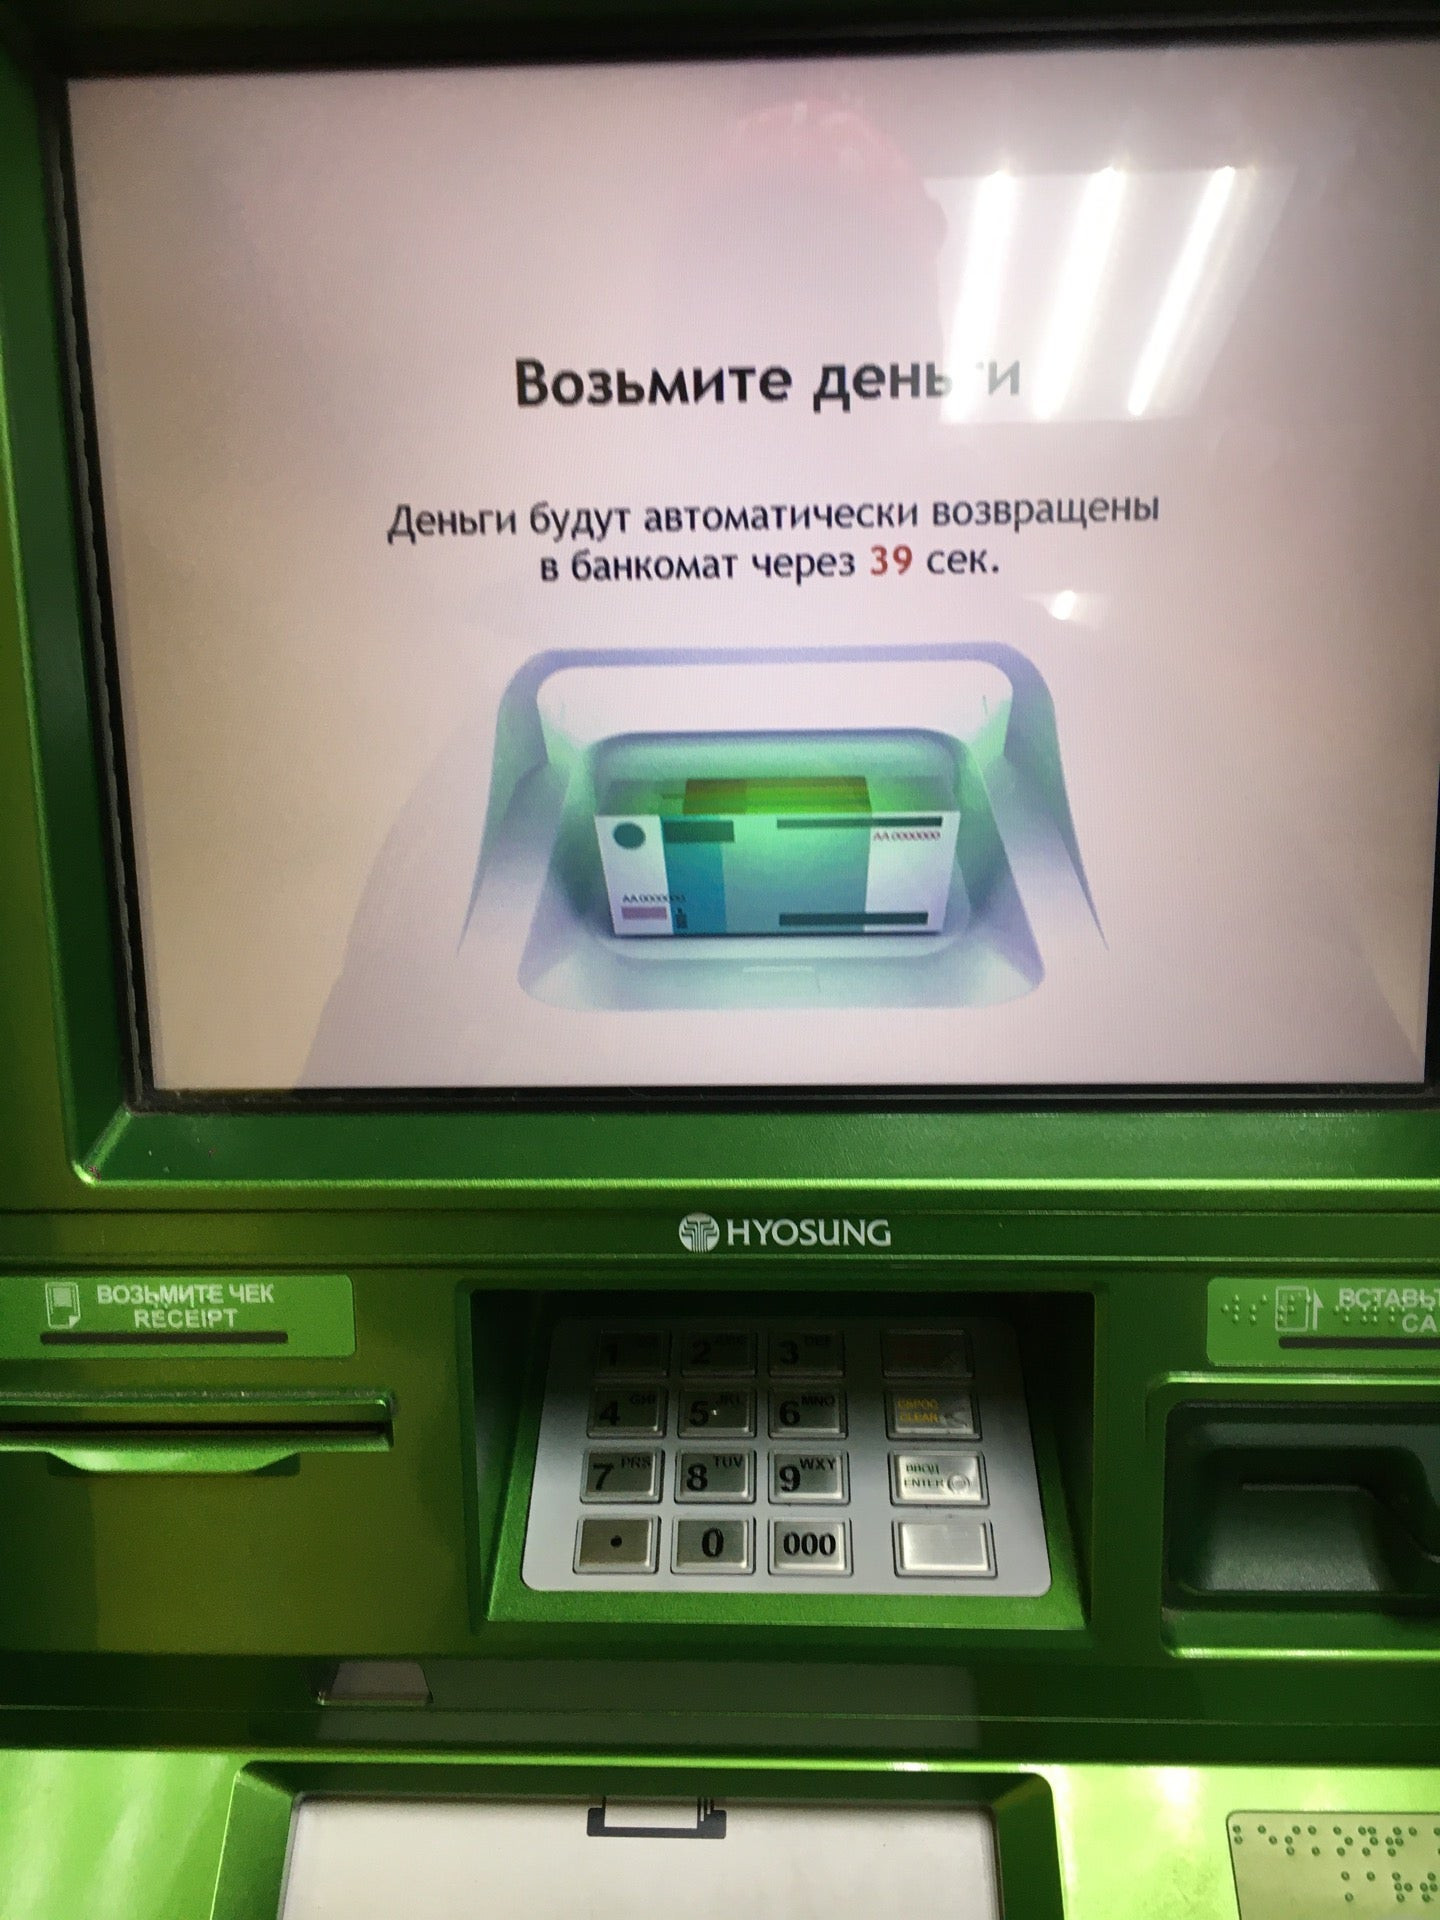 Обмен валют на новокосино купить ферму биткоинов иркутск